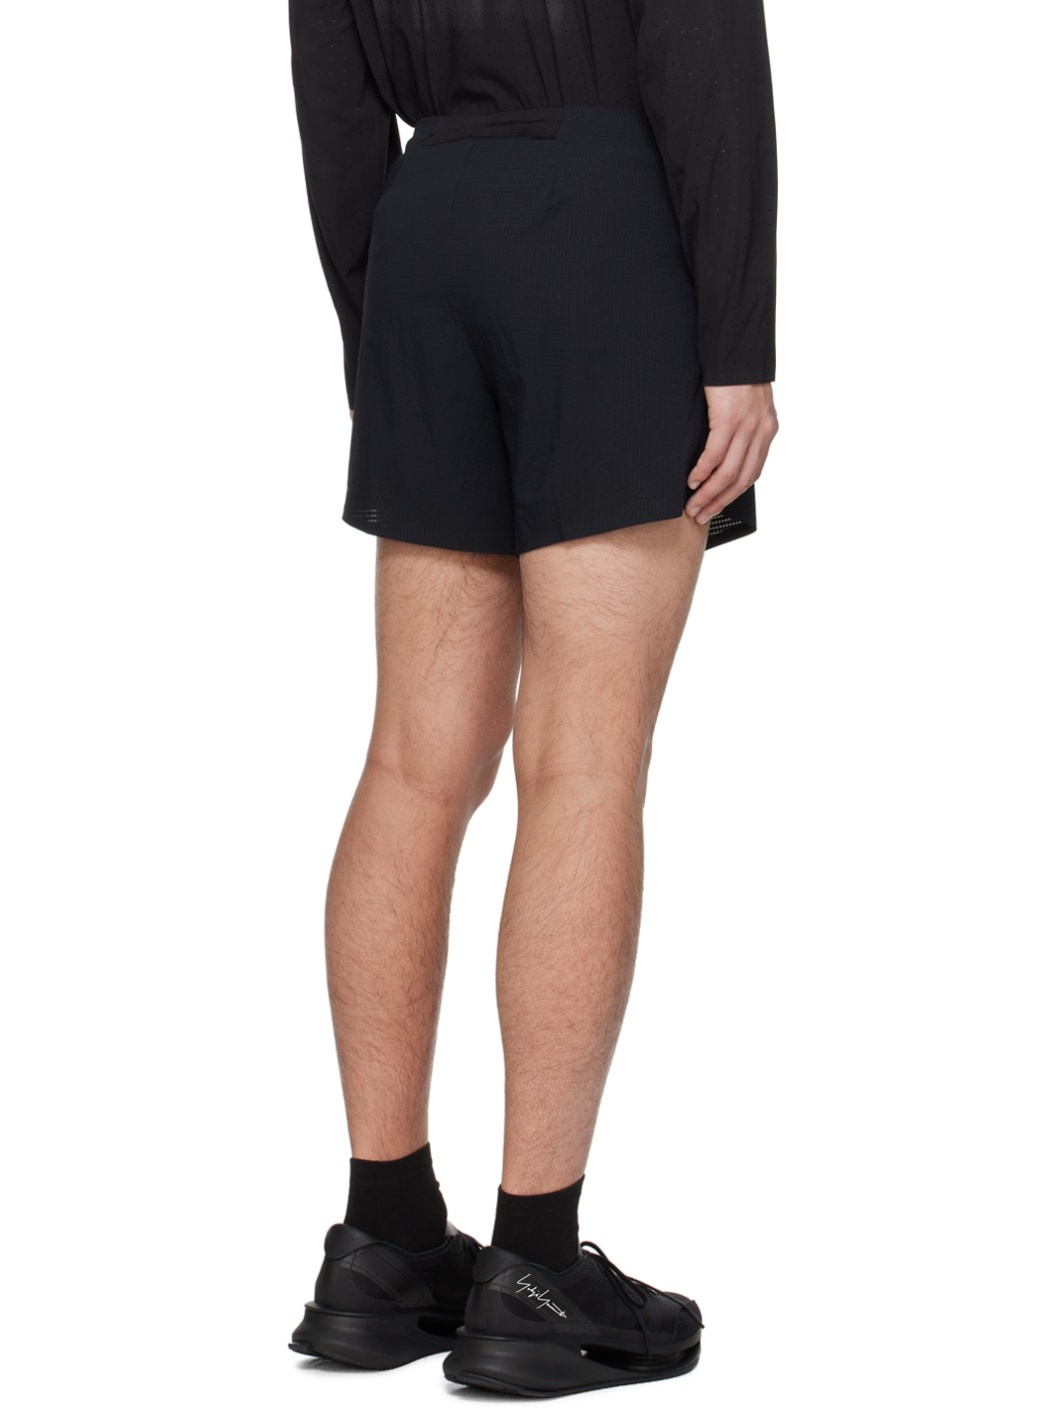 Black Printed Shorts - 3